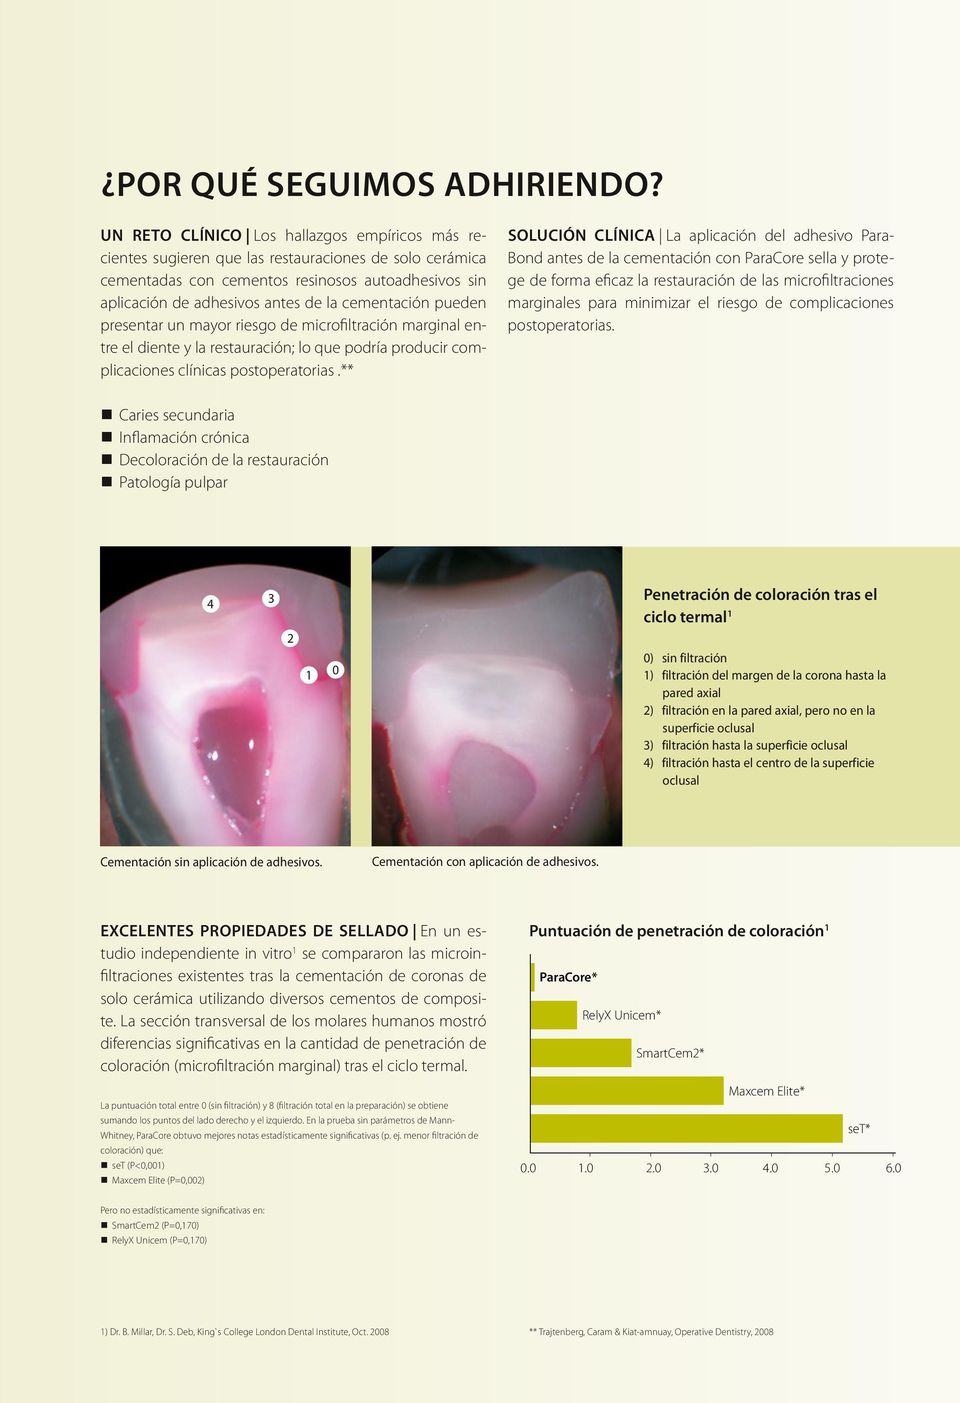 cementación pueden presentar un mayor riesgo de microfiltración marginal entre el diente y la restauración; lo que podría producir complicaciones clínicas postoperatorias.